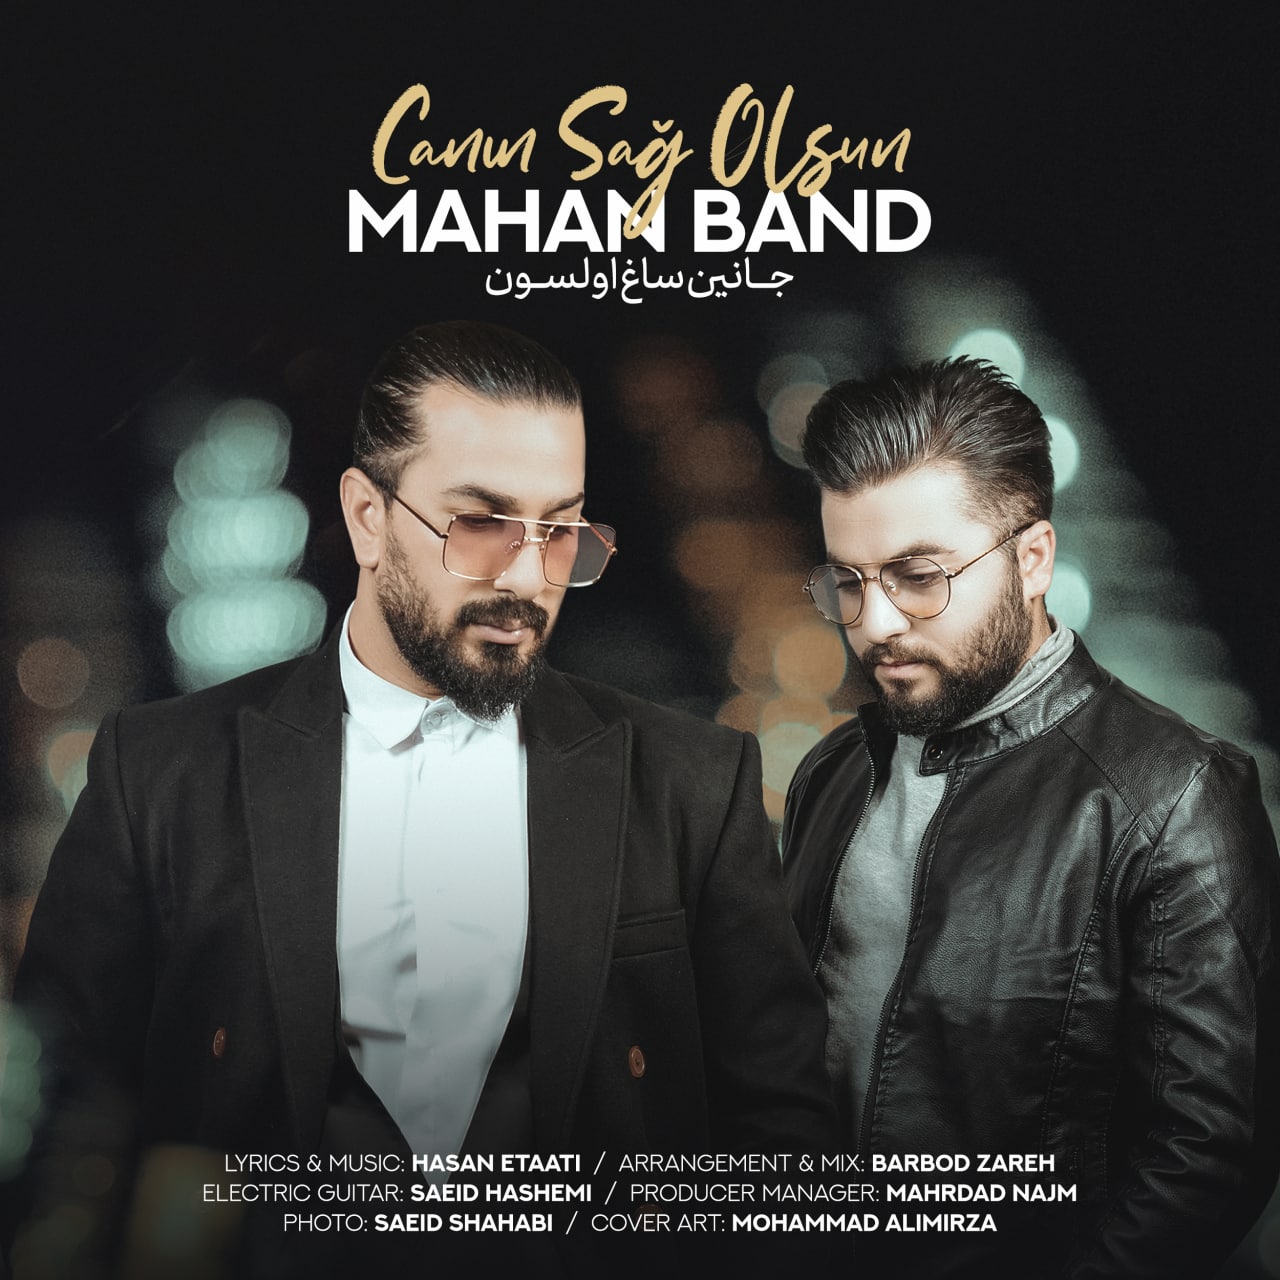 Mahan Band – Canin Sağolsun